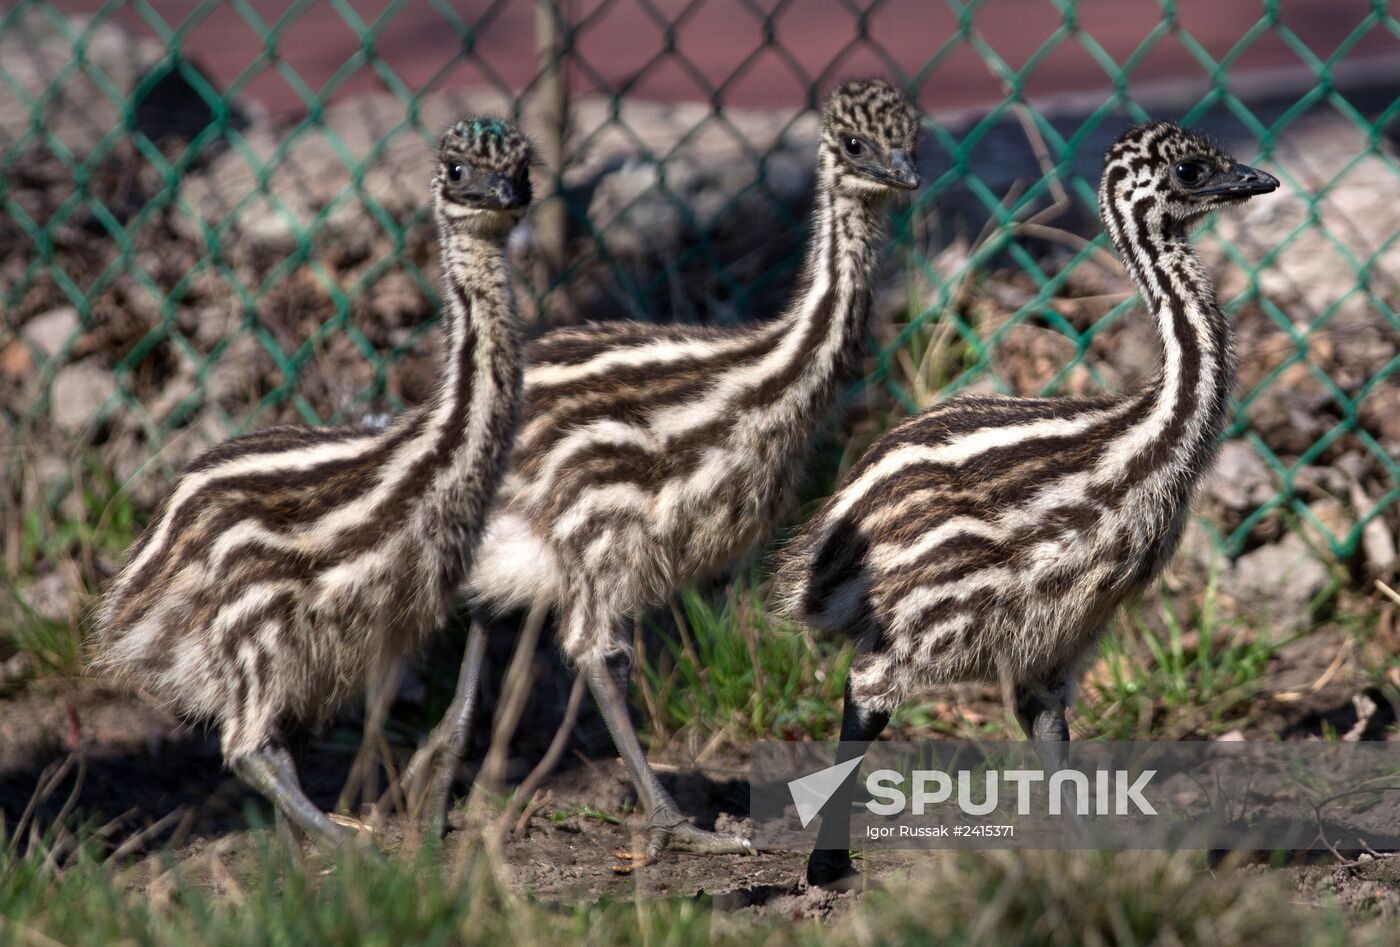 Emu chicks and young Paraguayan anacondas at Leningrad Zoo